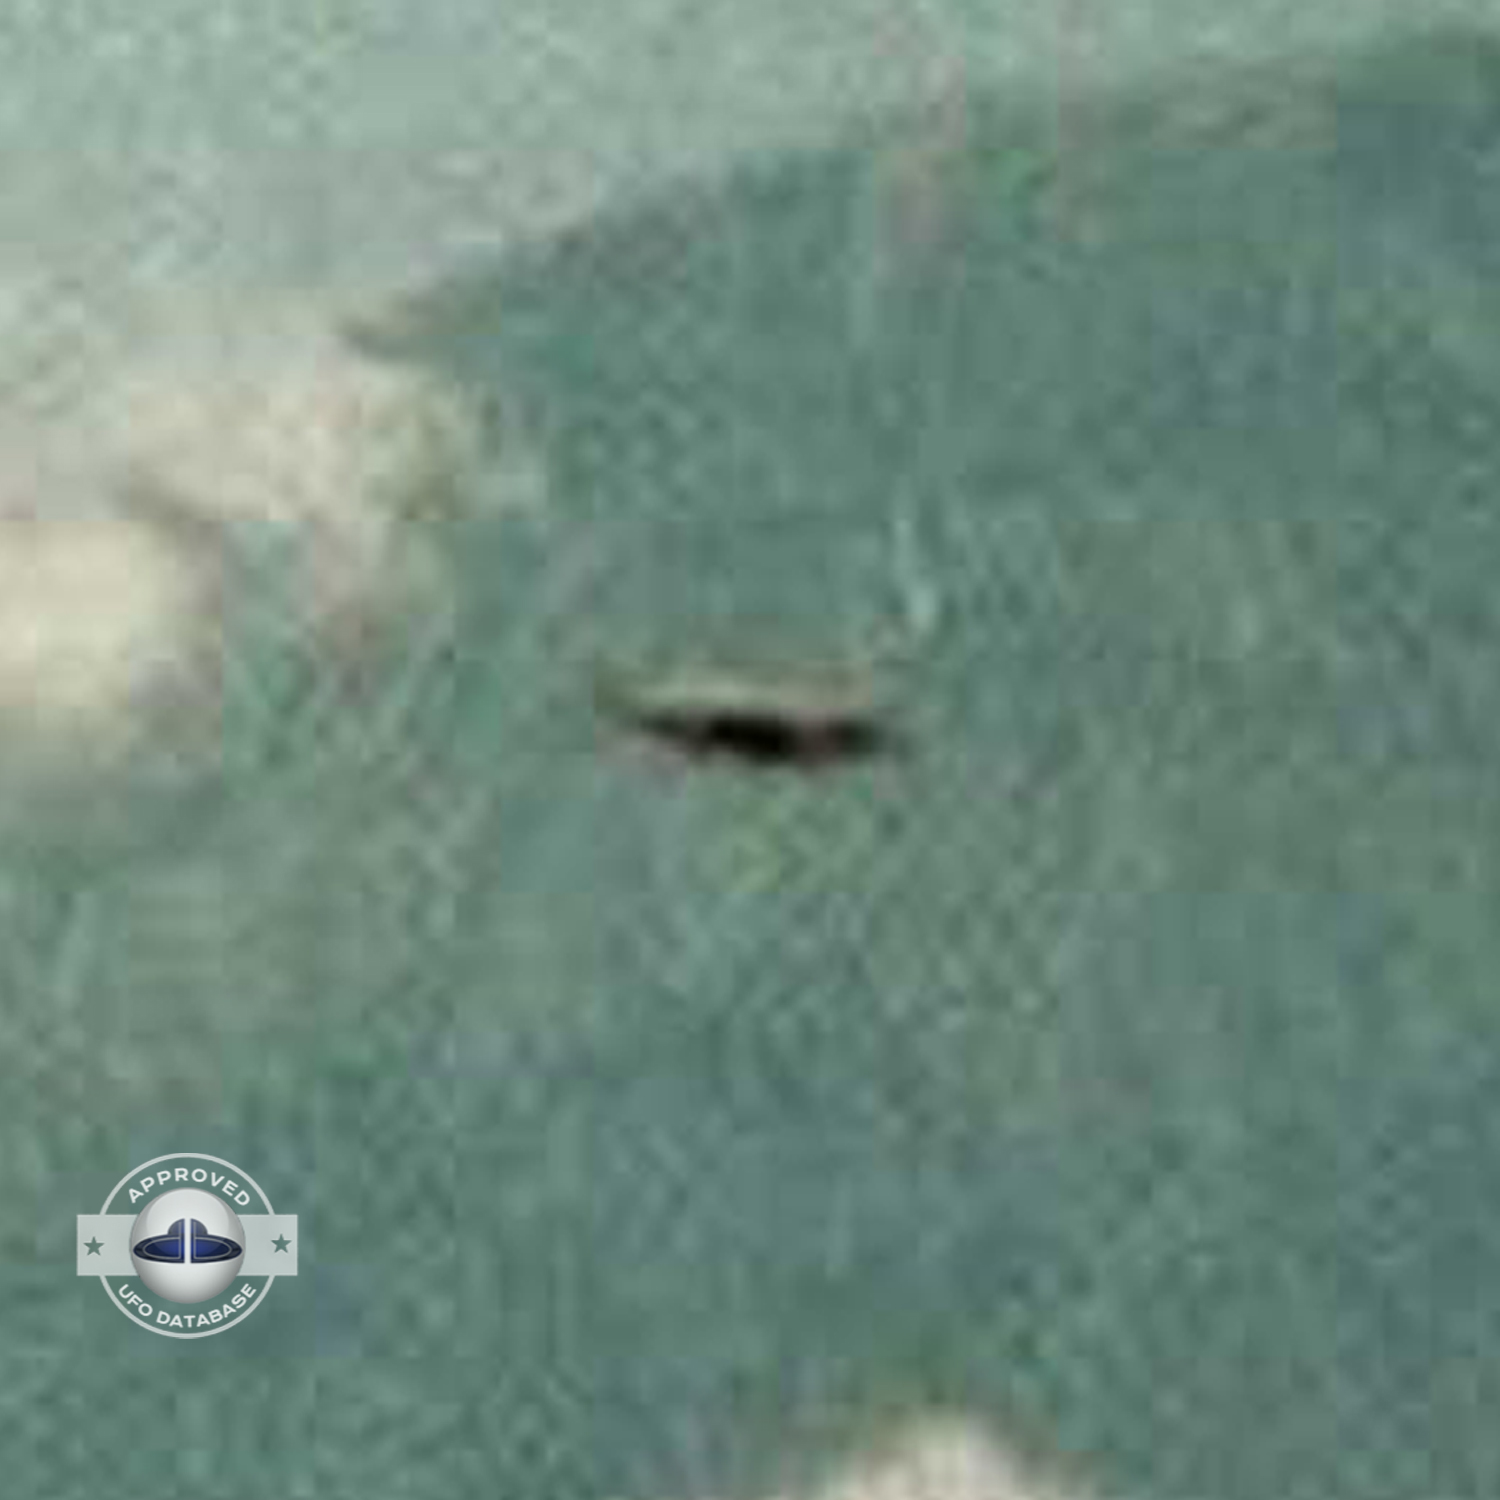 UFO Picture - UFO in Bali island, Indonesia - UFO Picture 1973 UFO Picture #38-4